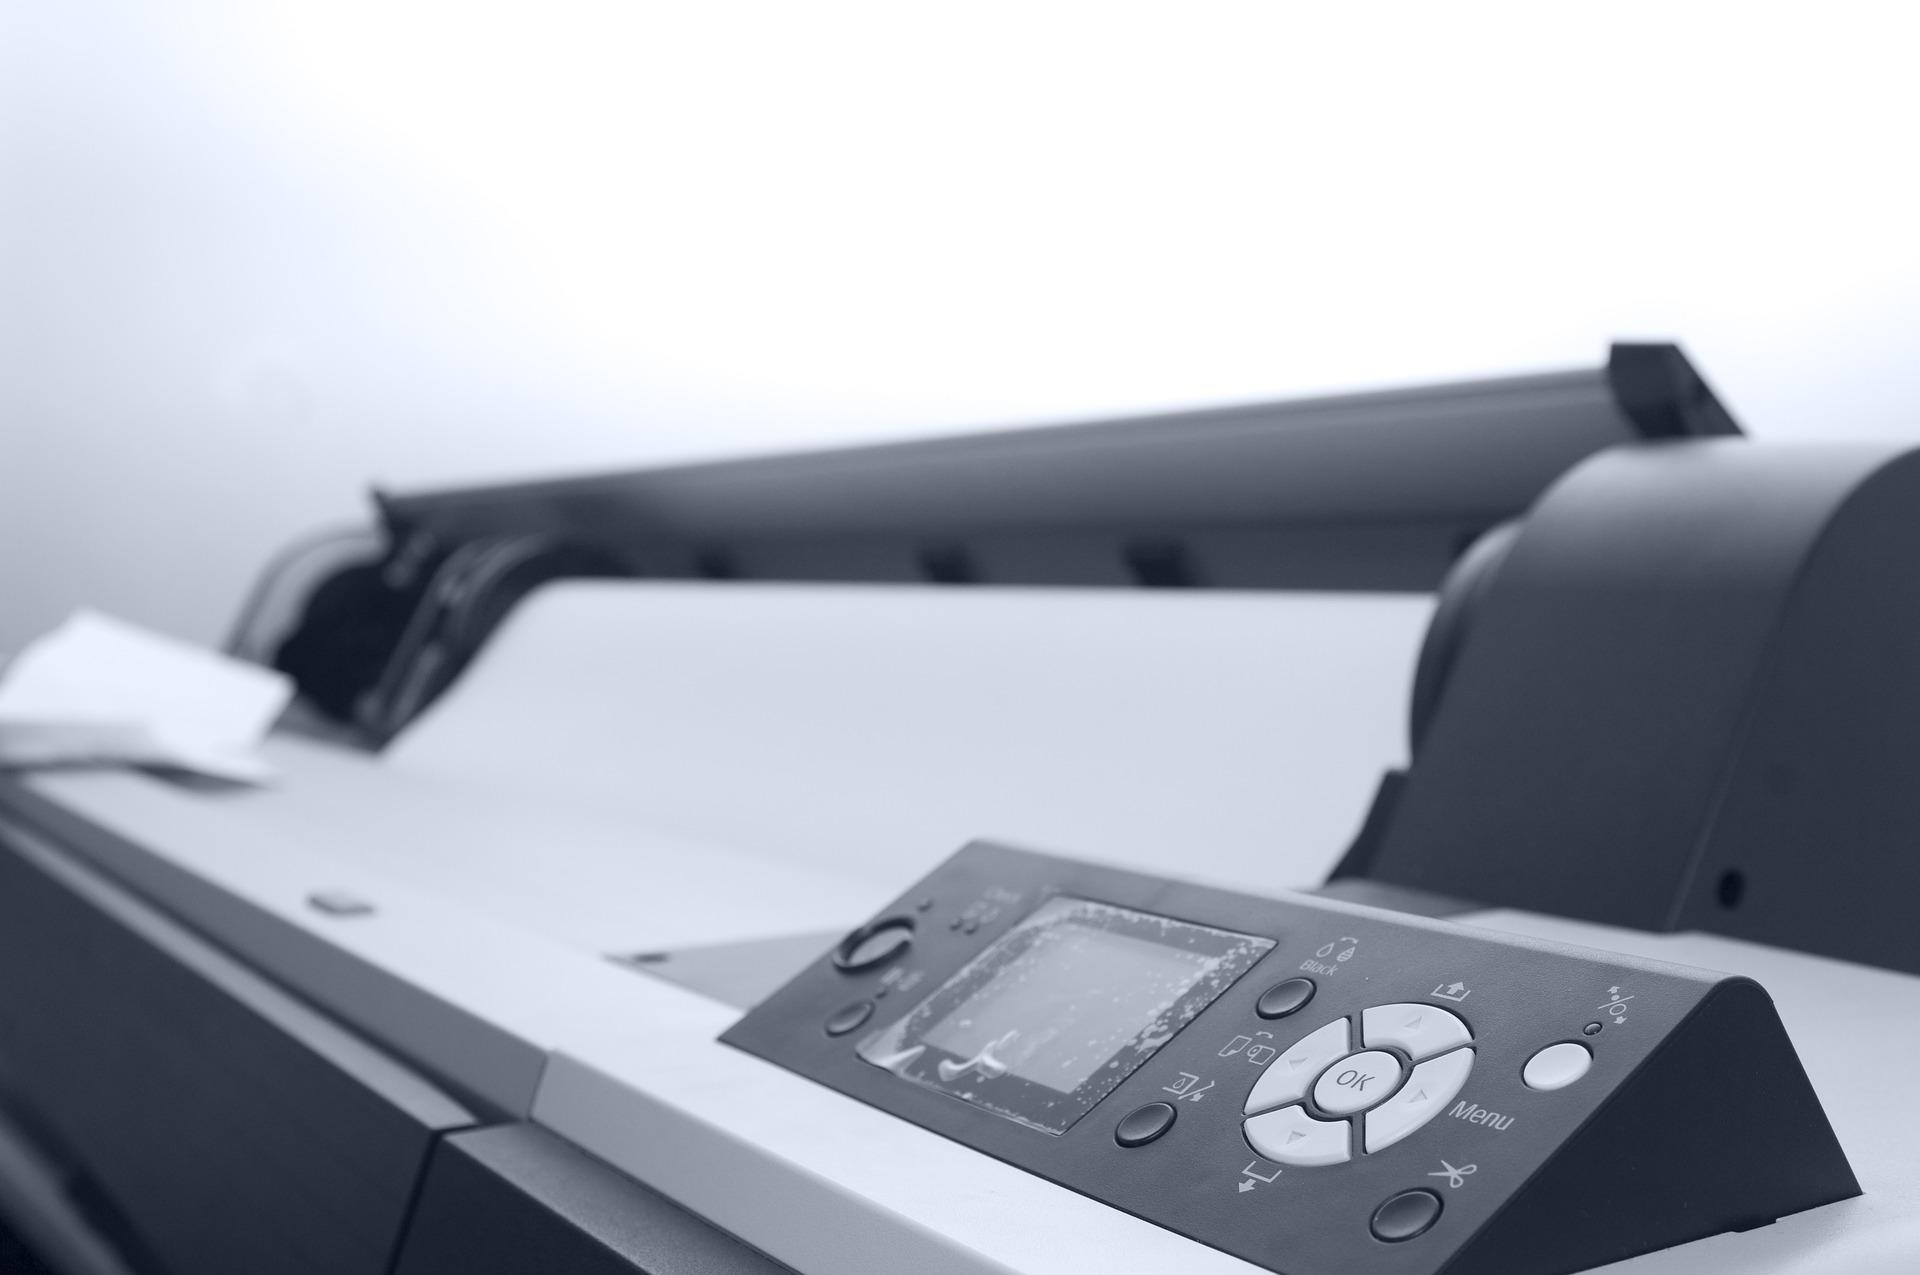 ¿Qué es una impresora plotter y para qué sirve?